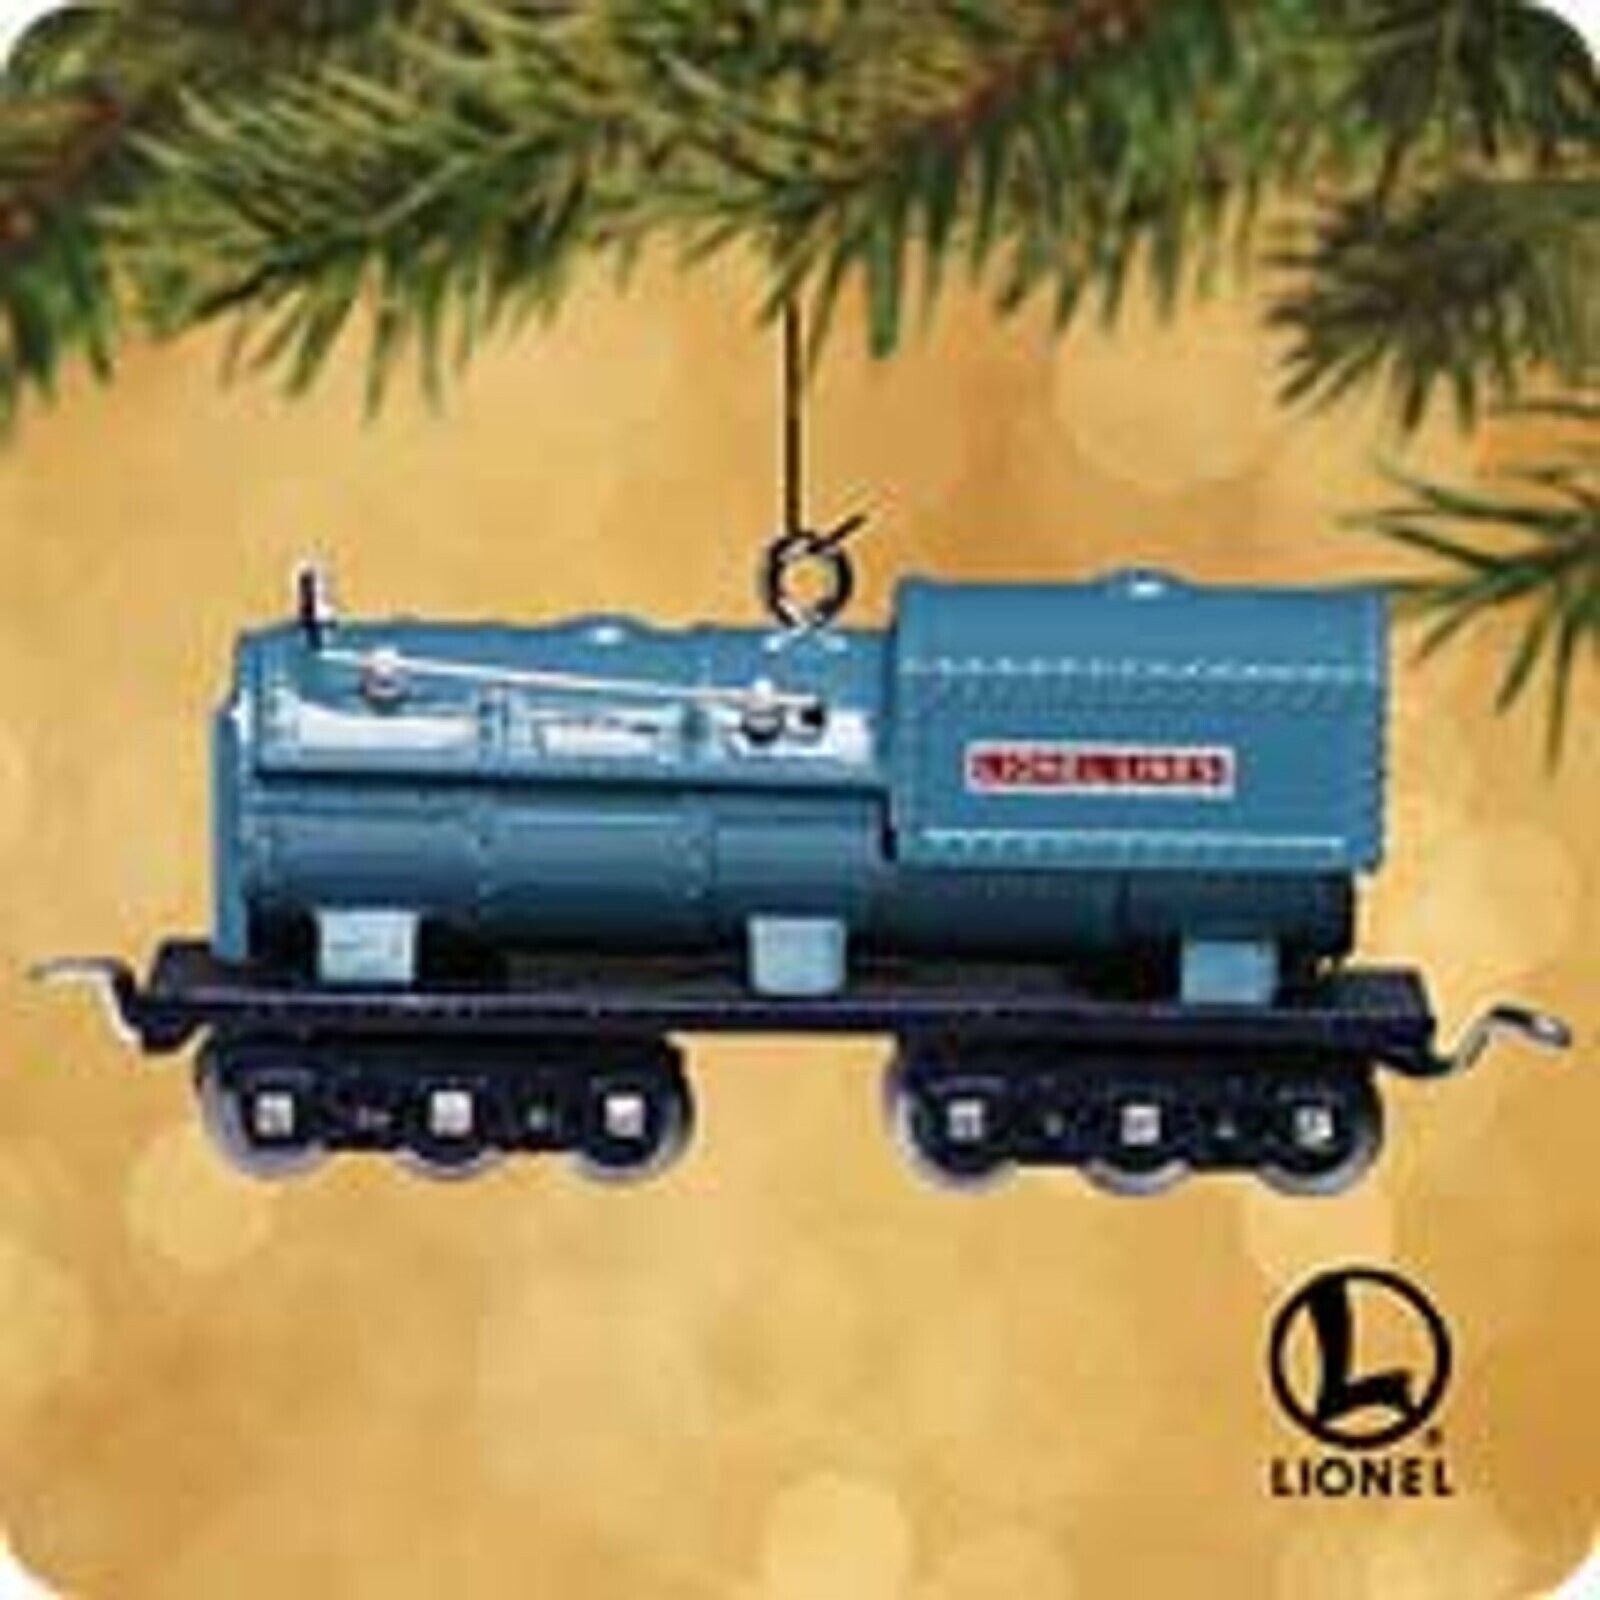 \'Blue Comet 400T Oil Tender\' \'Lionel Train Series\' NEW Hallmark 2002 Ornament